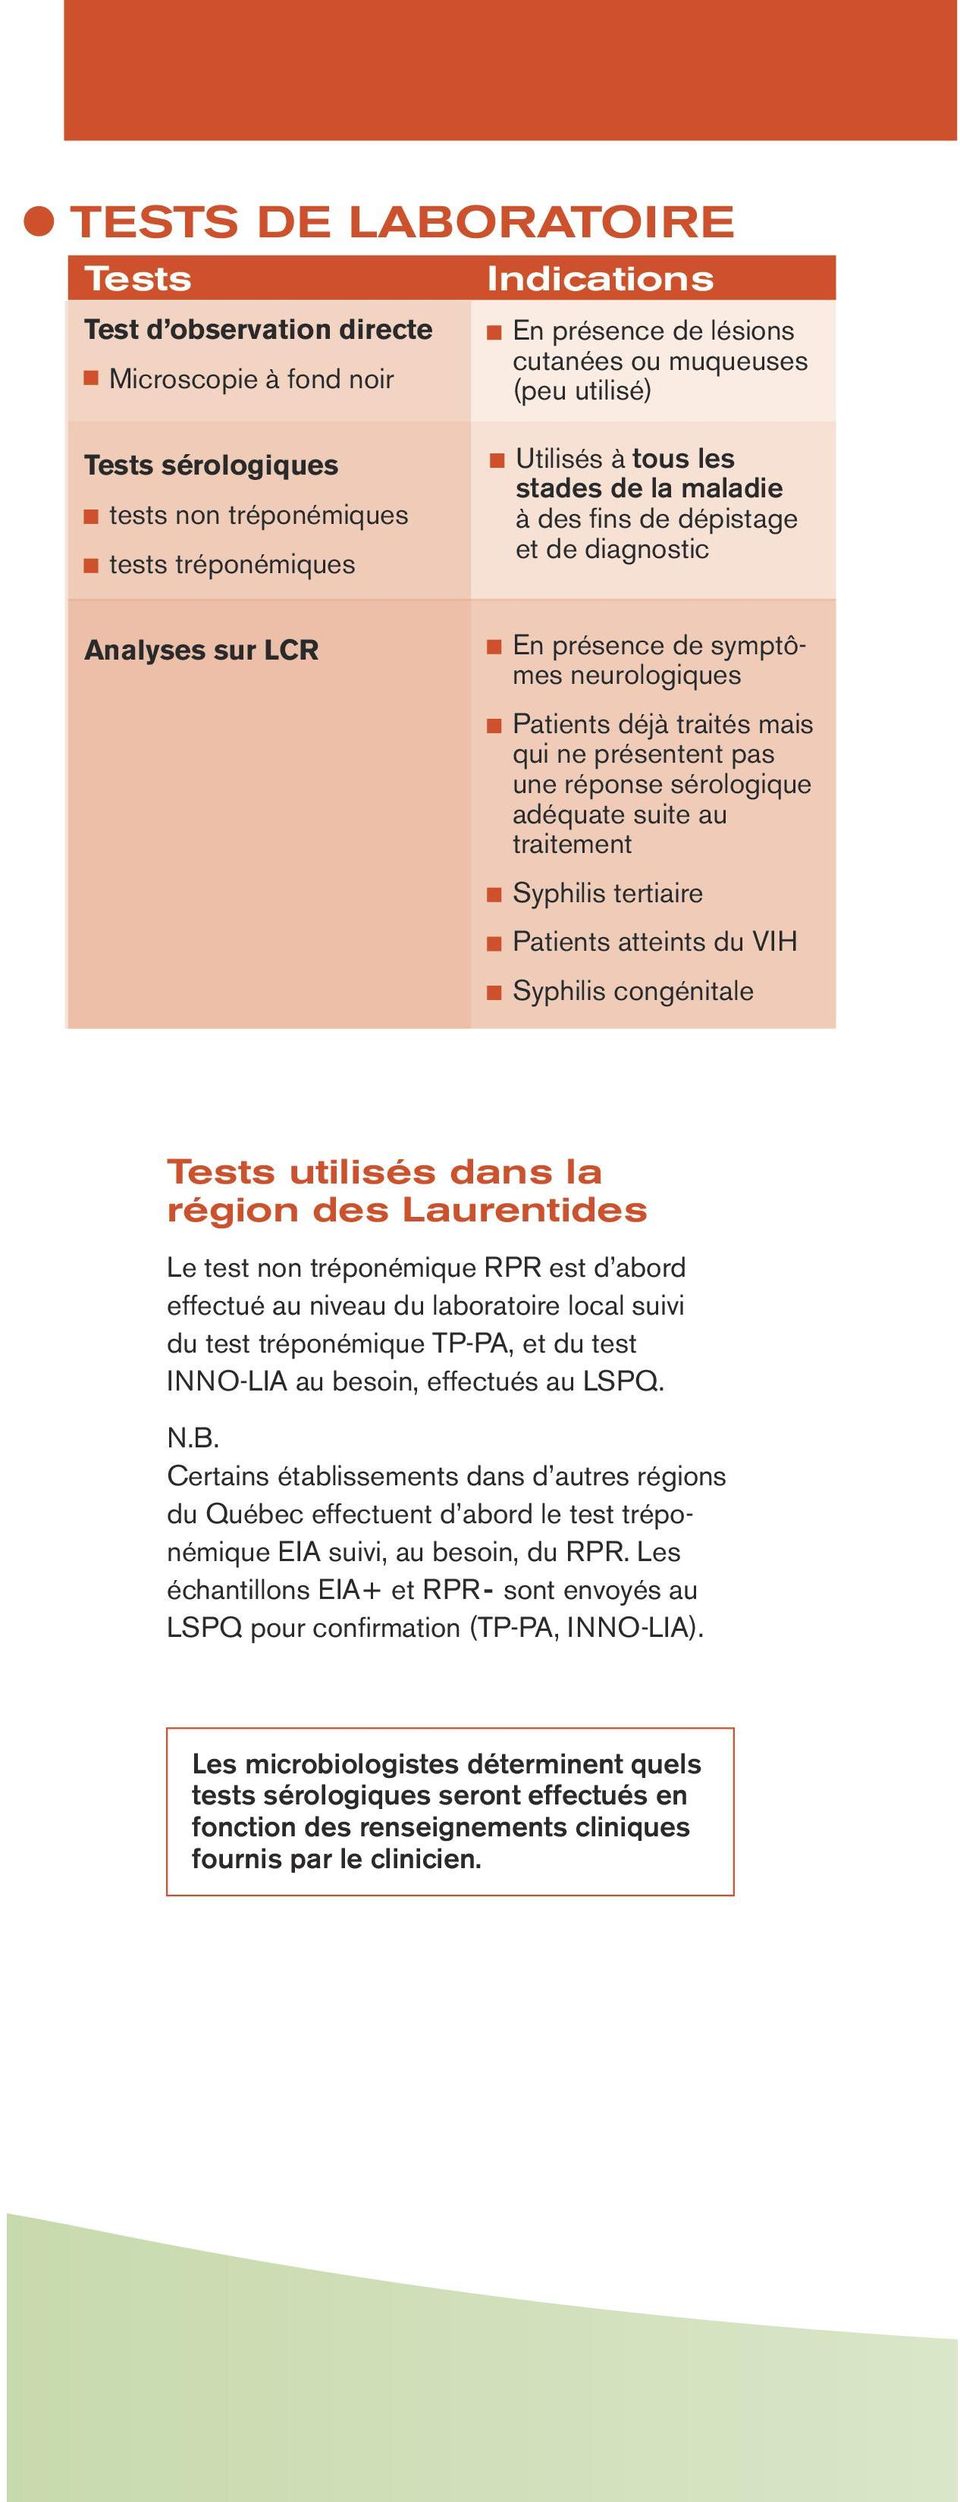 Tests sérologiques tests non s tests s Analyses sur LCR TESTS SÉROLOG Indications Tests non tréponémiq En présence de lésions cutanées ou muqueuses (peu utilisé) Tests les plus souvent utilisés RPR